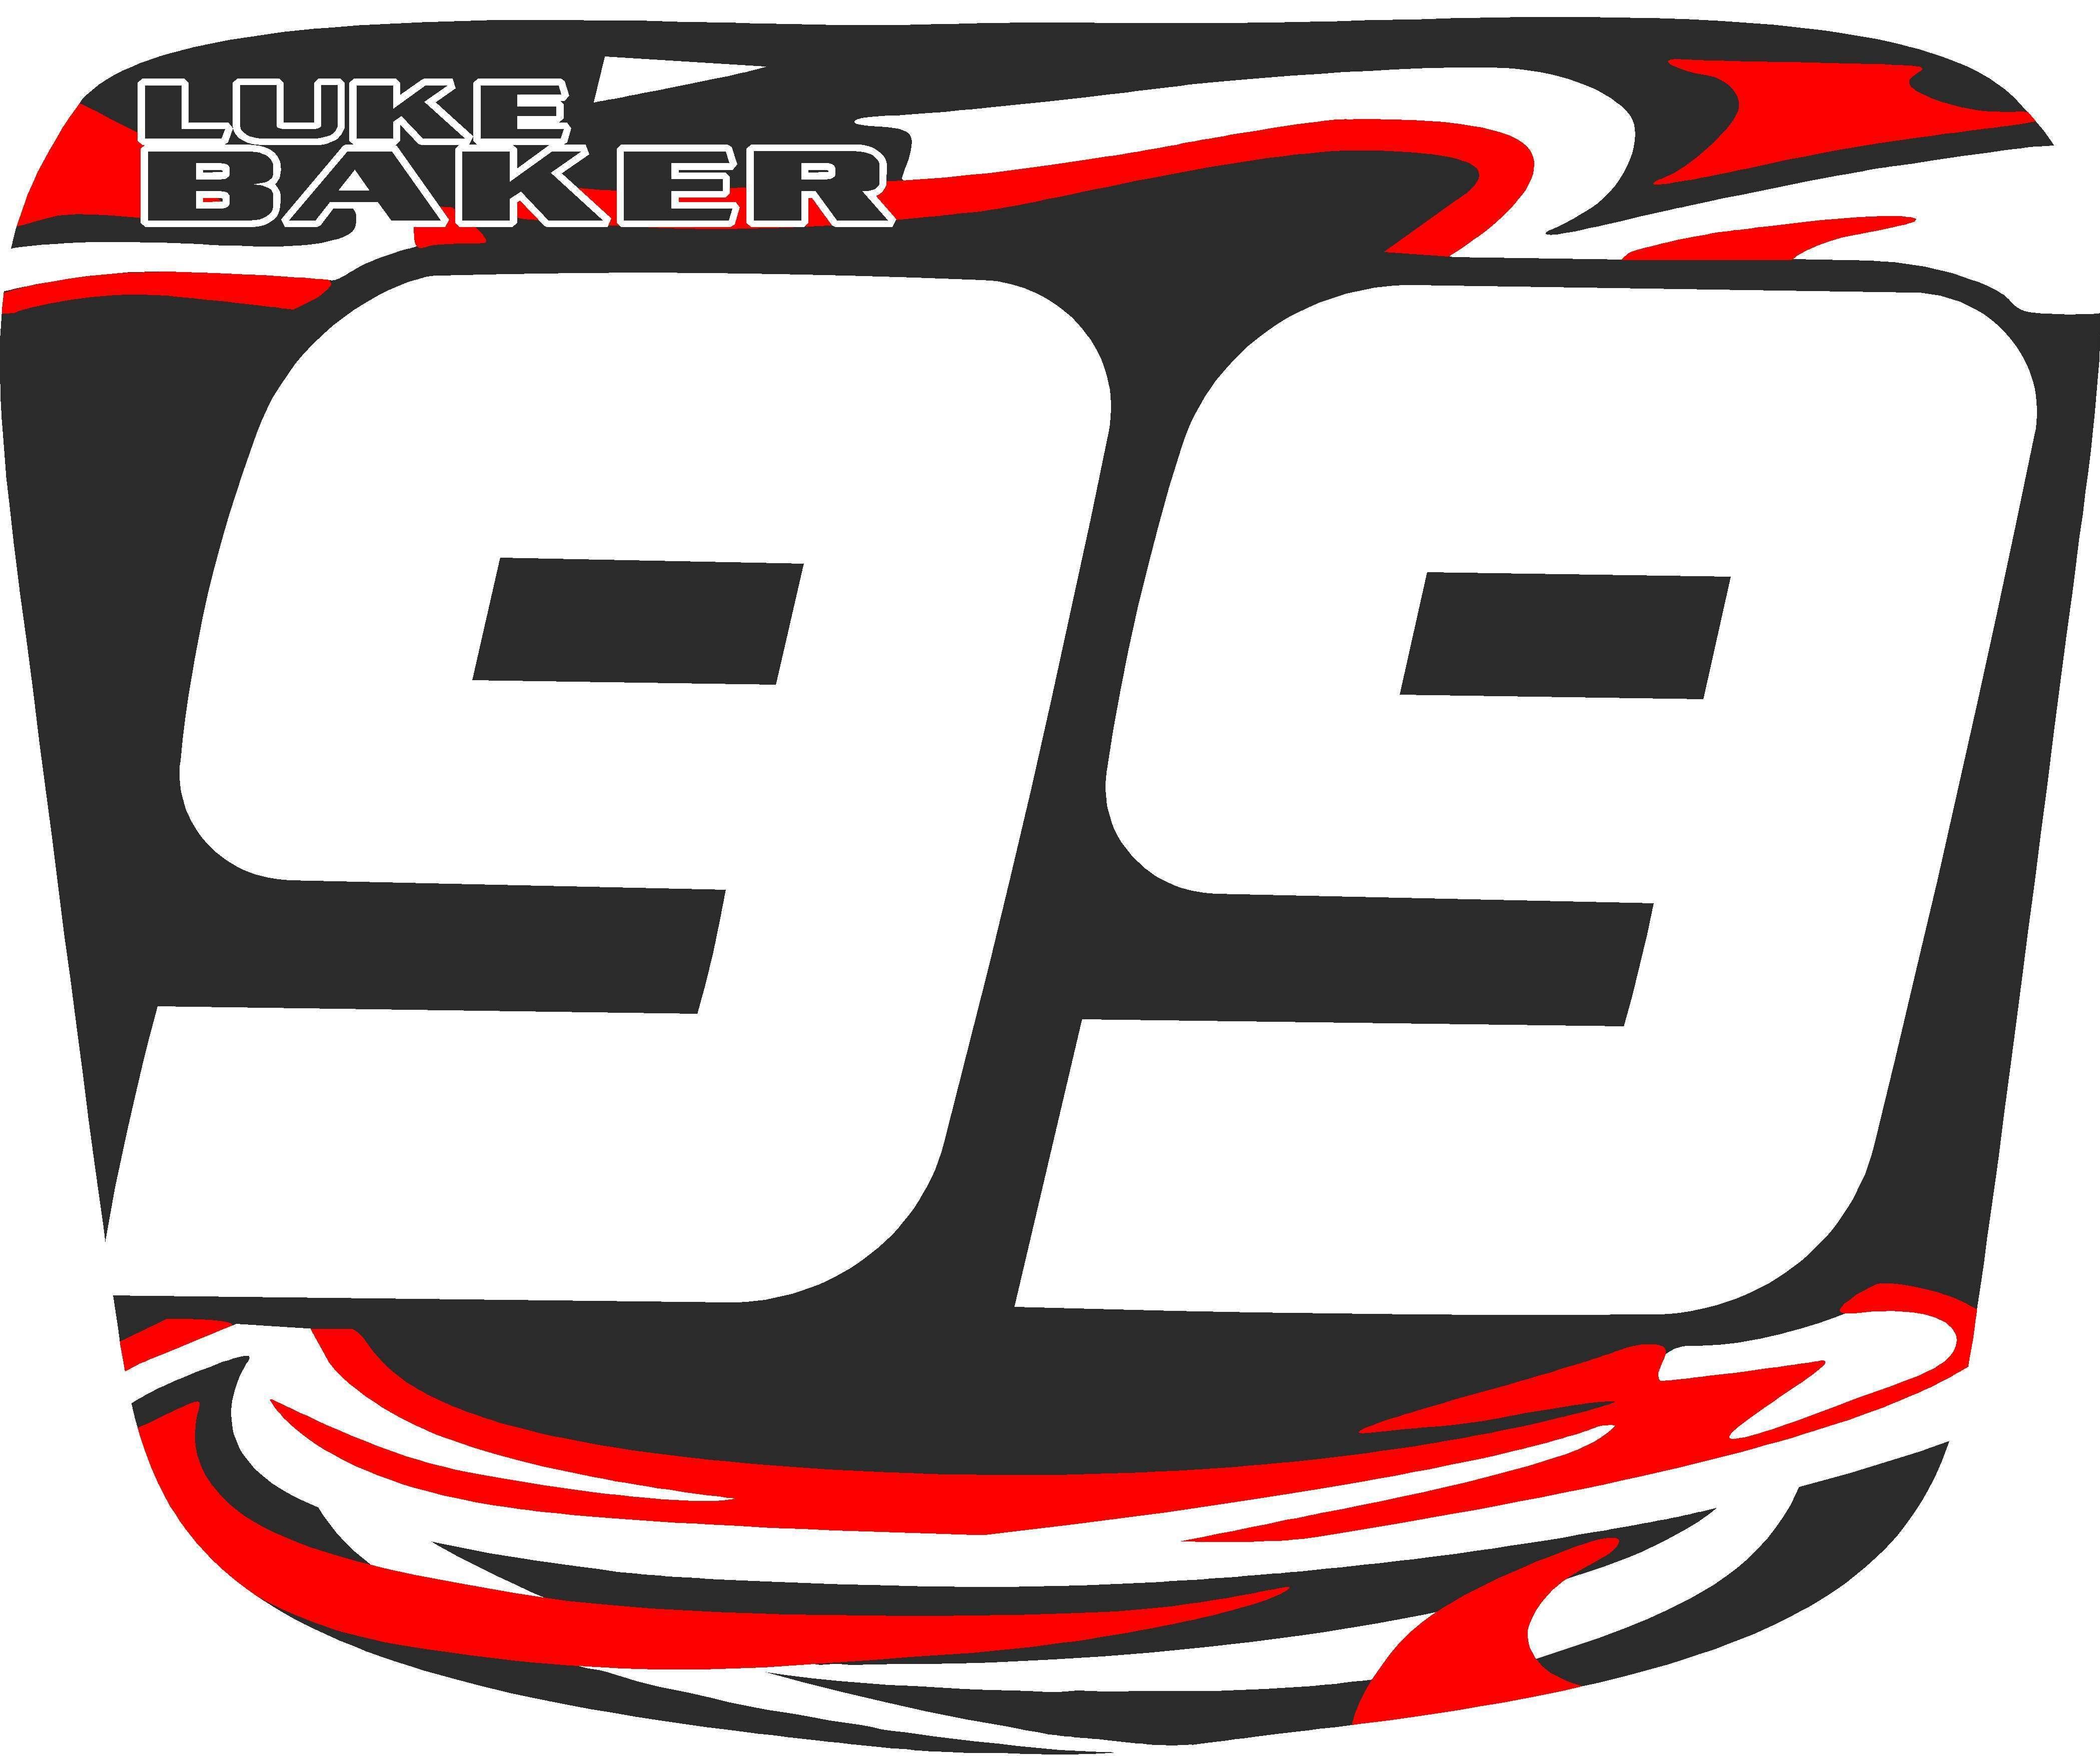 Dirt Bike Racing Logo - Sponsor 4 Year Old Motocross Racer Luke Baker